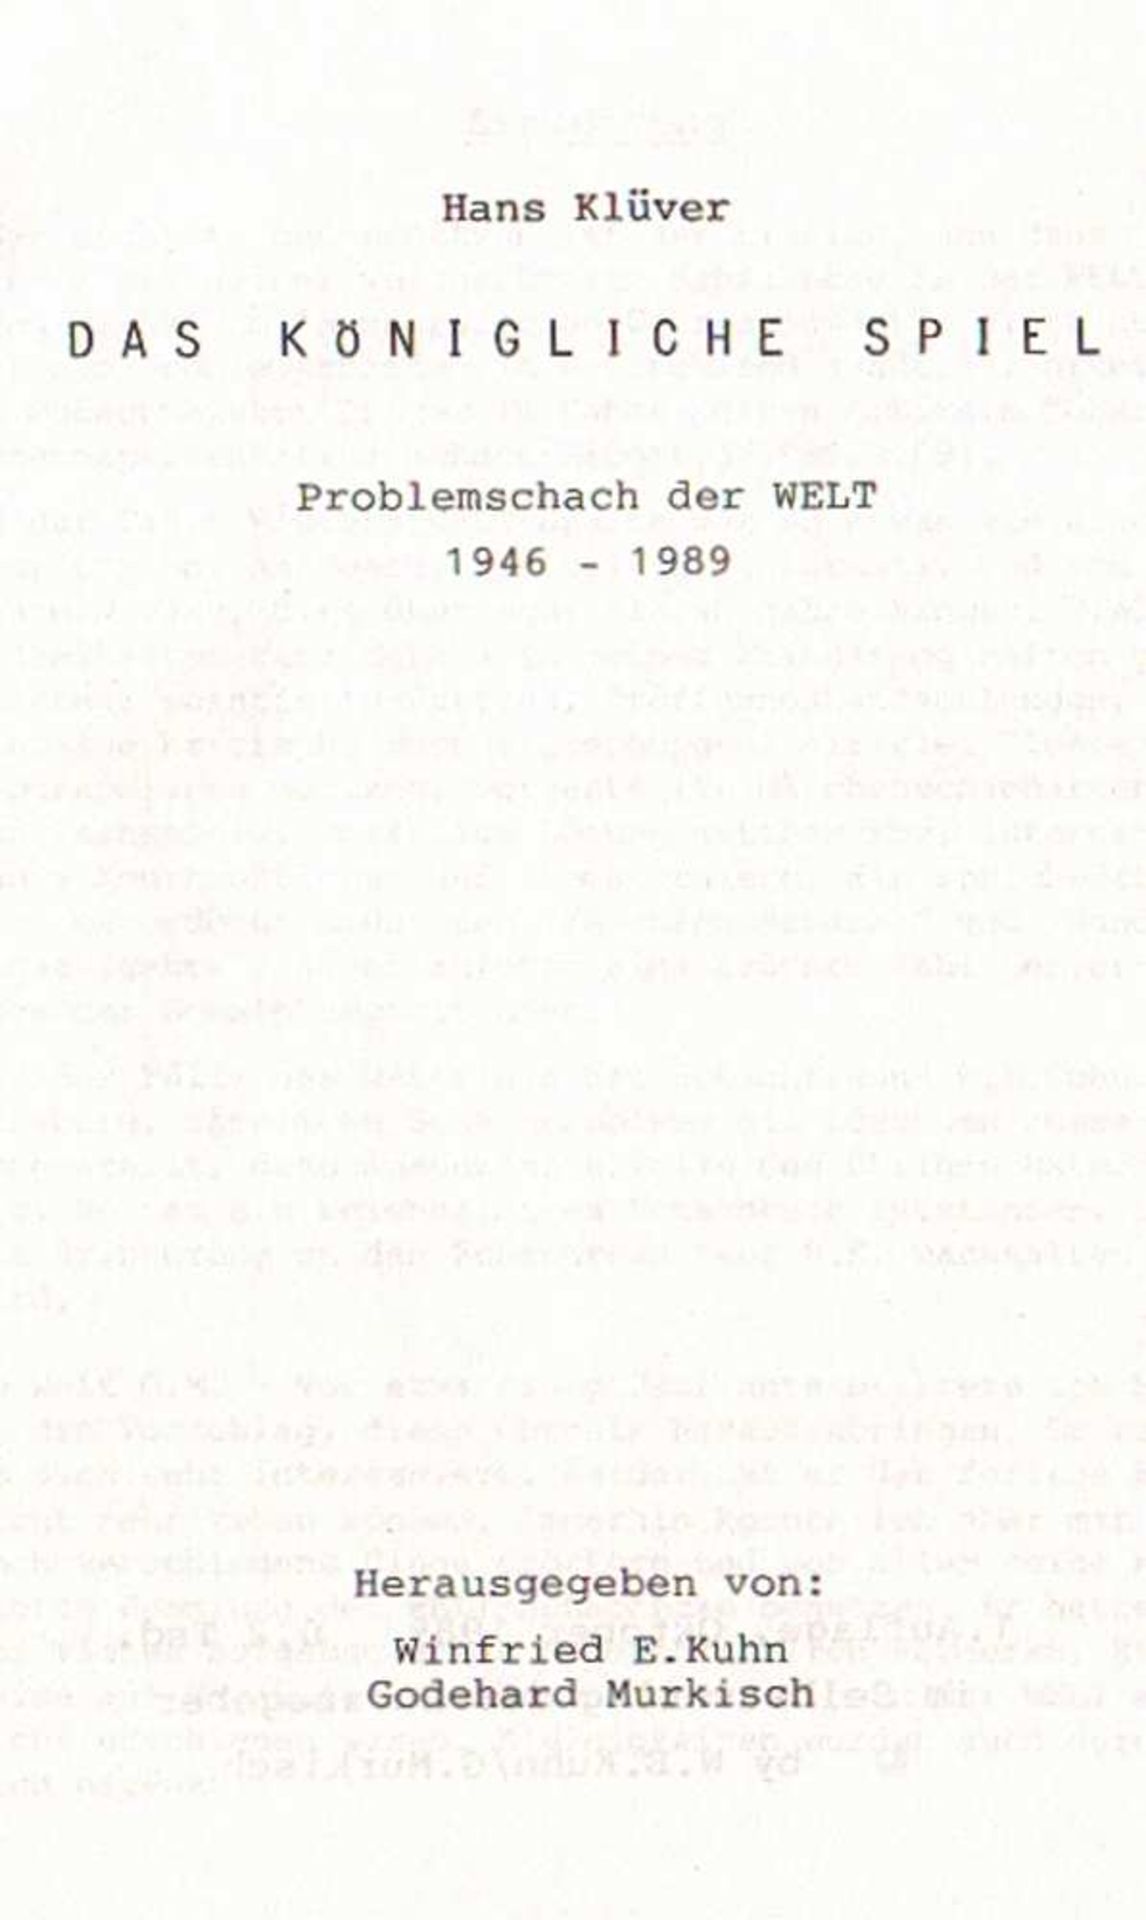 Klüver, Hans. Das Königliche Spiel. Problemschach der Welt 1946 - 1989. Hrsg. von W. E. Kuhn und